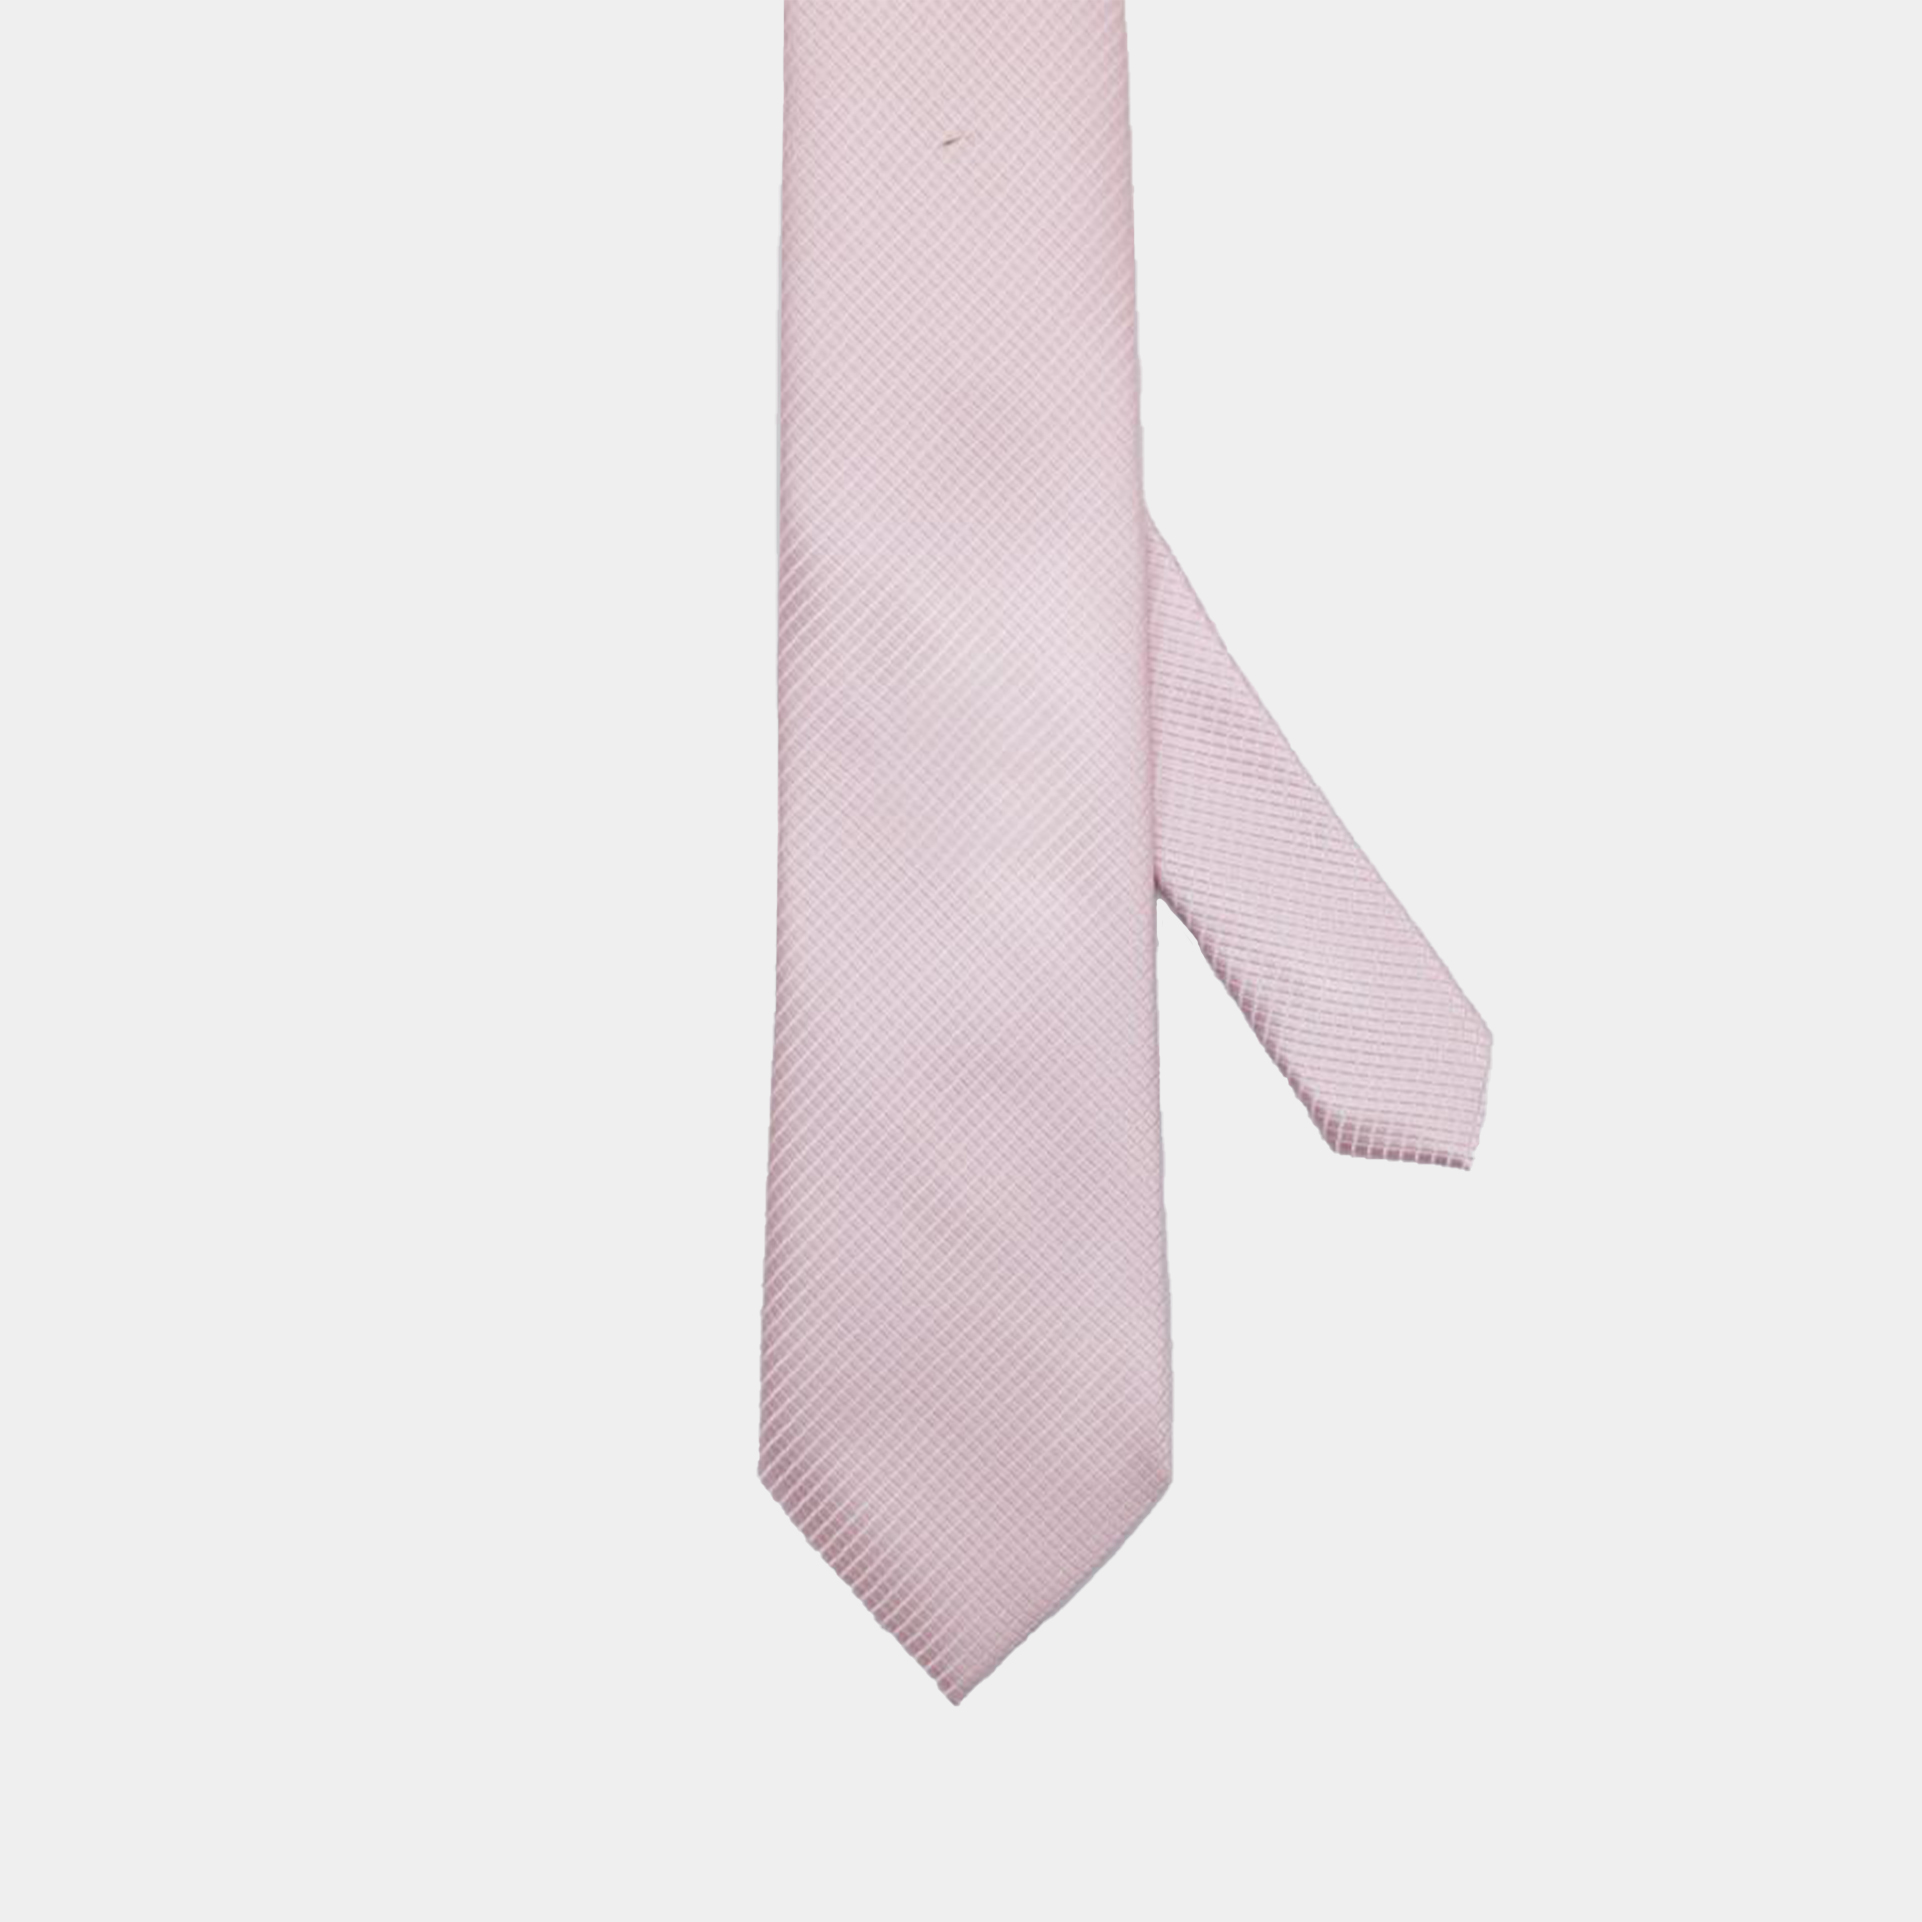 Pink Texture Necktie – เนคไทสีชมพูลายทอ - DGRIE - SHOP